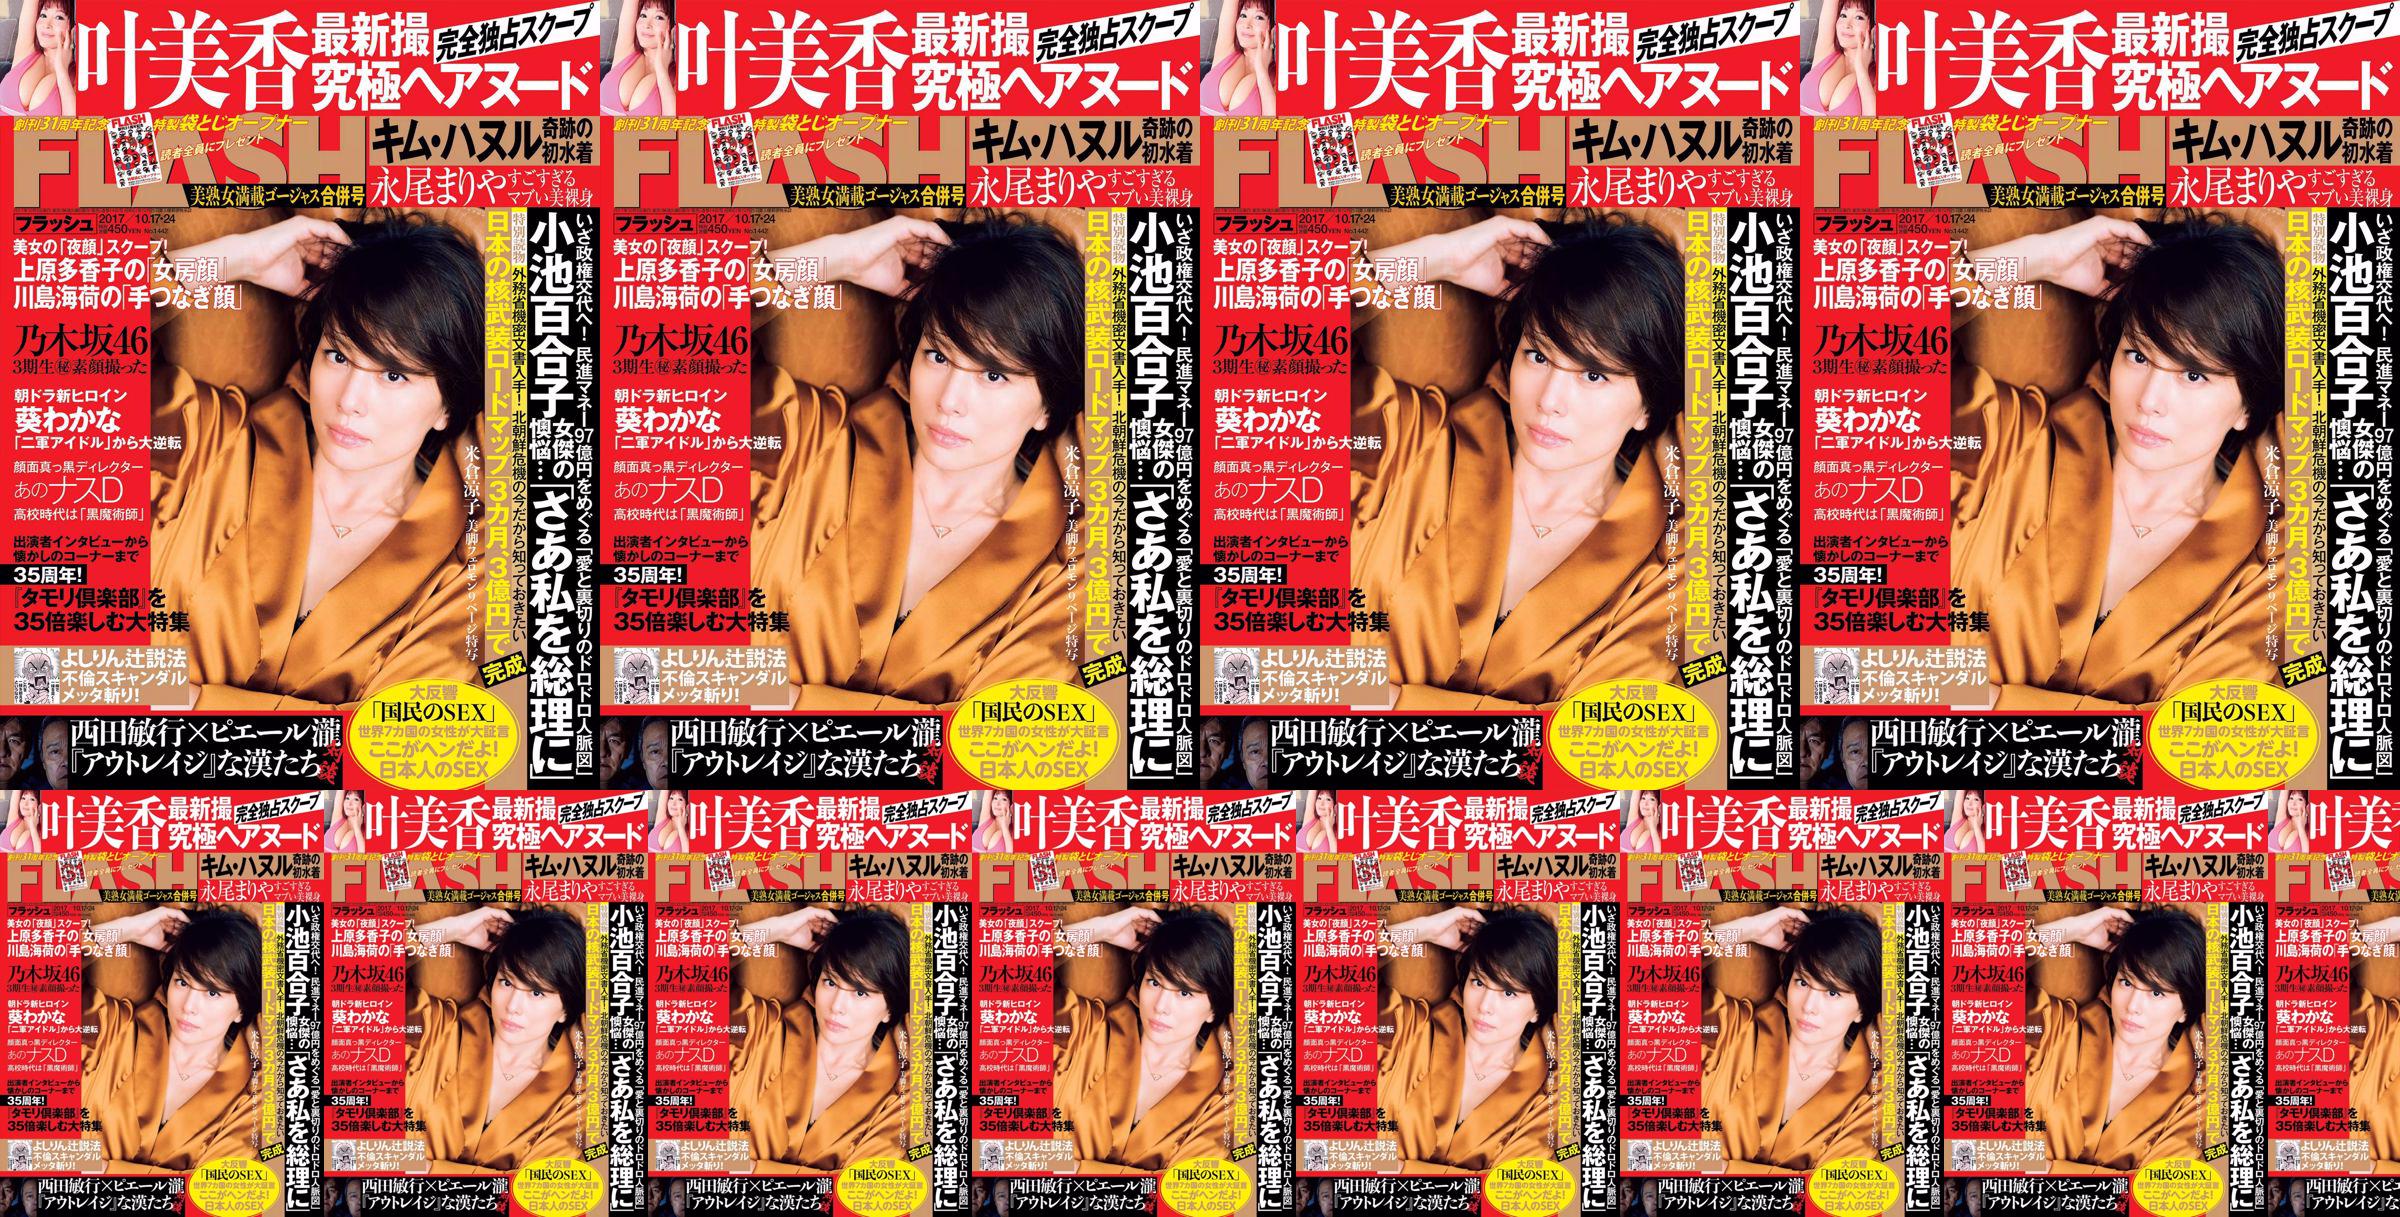 [FLASH] Yonekura Ryoko Ye Meixiang Tachibana Flower Rin Nagao ま り や 2017.10.17-24 Photo Magazine No.1bdea0 페이지 6